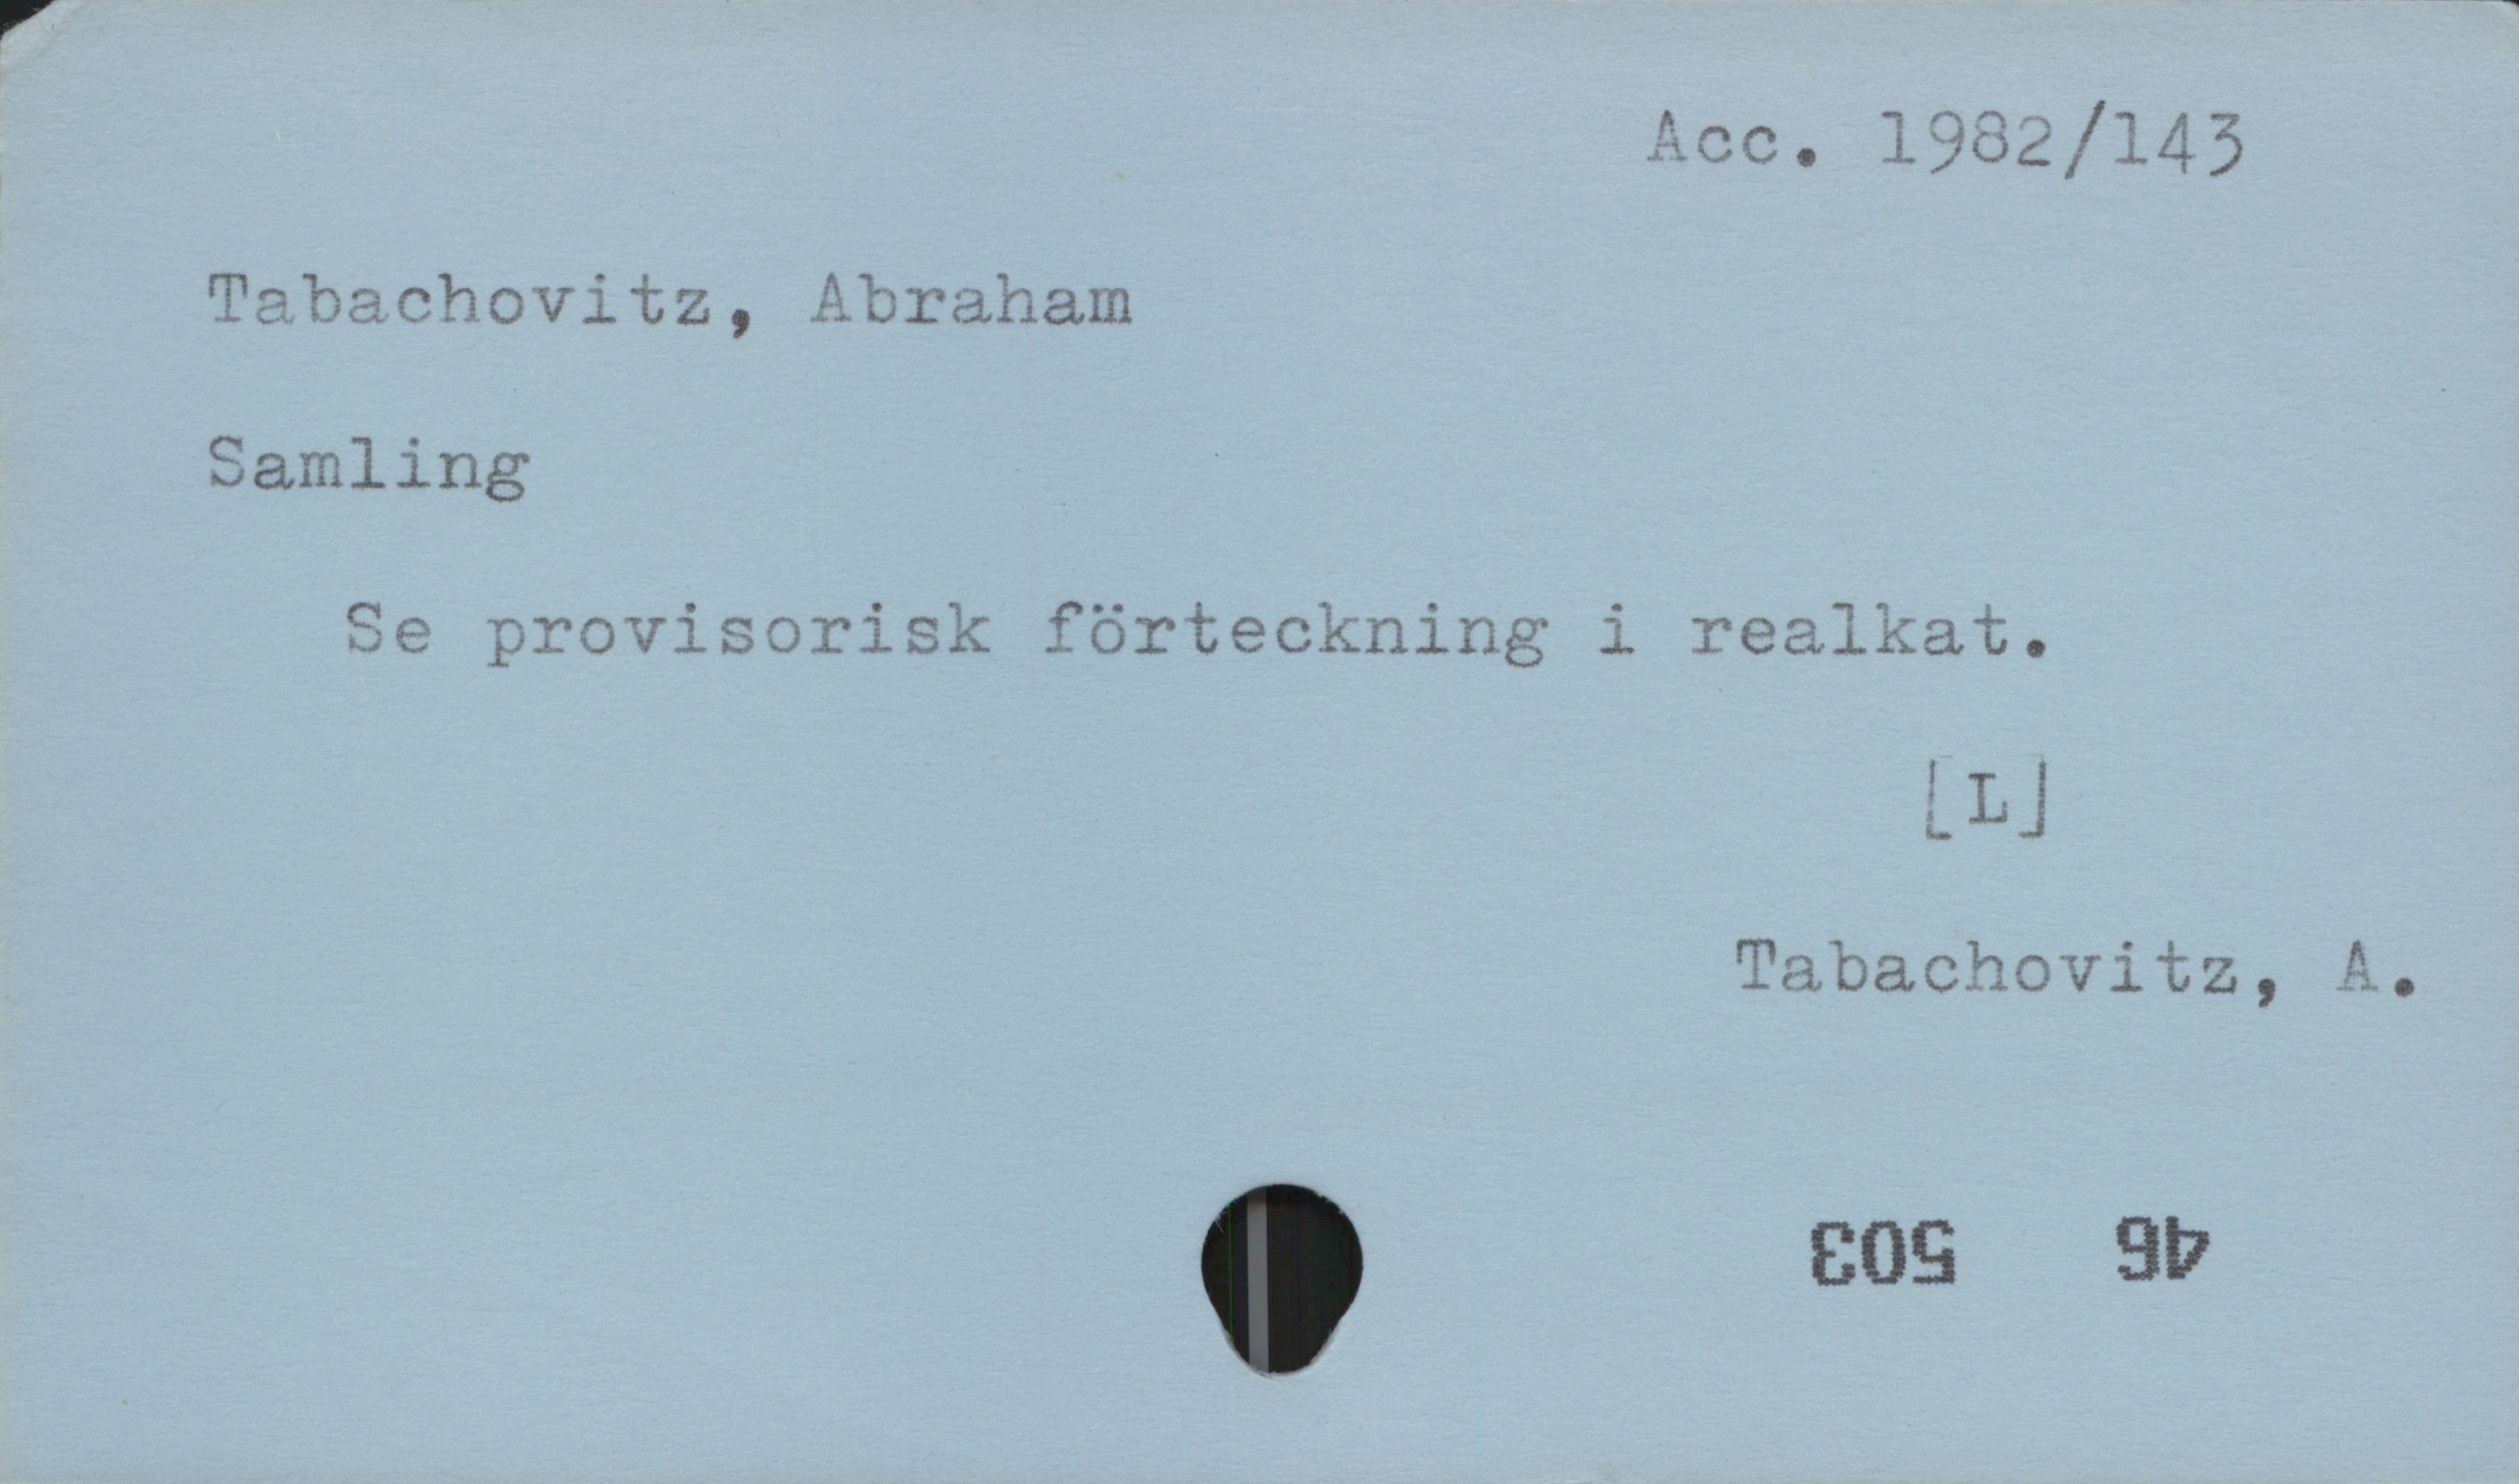 Tabachovitz, Abraham Acc. 1982 /143
Tabachovitz, Abraham
Samling
Se provisorisk förteckning i realkat.
[L]
Tabachovitz, A.